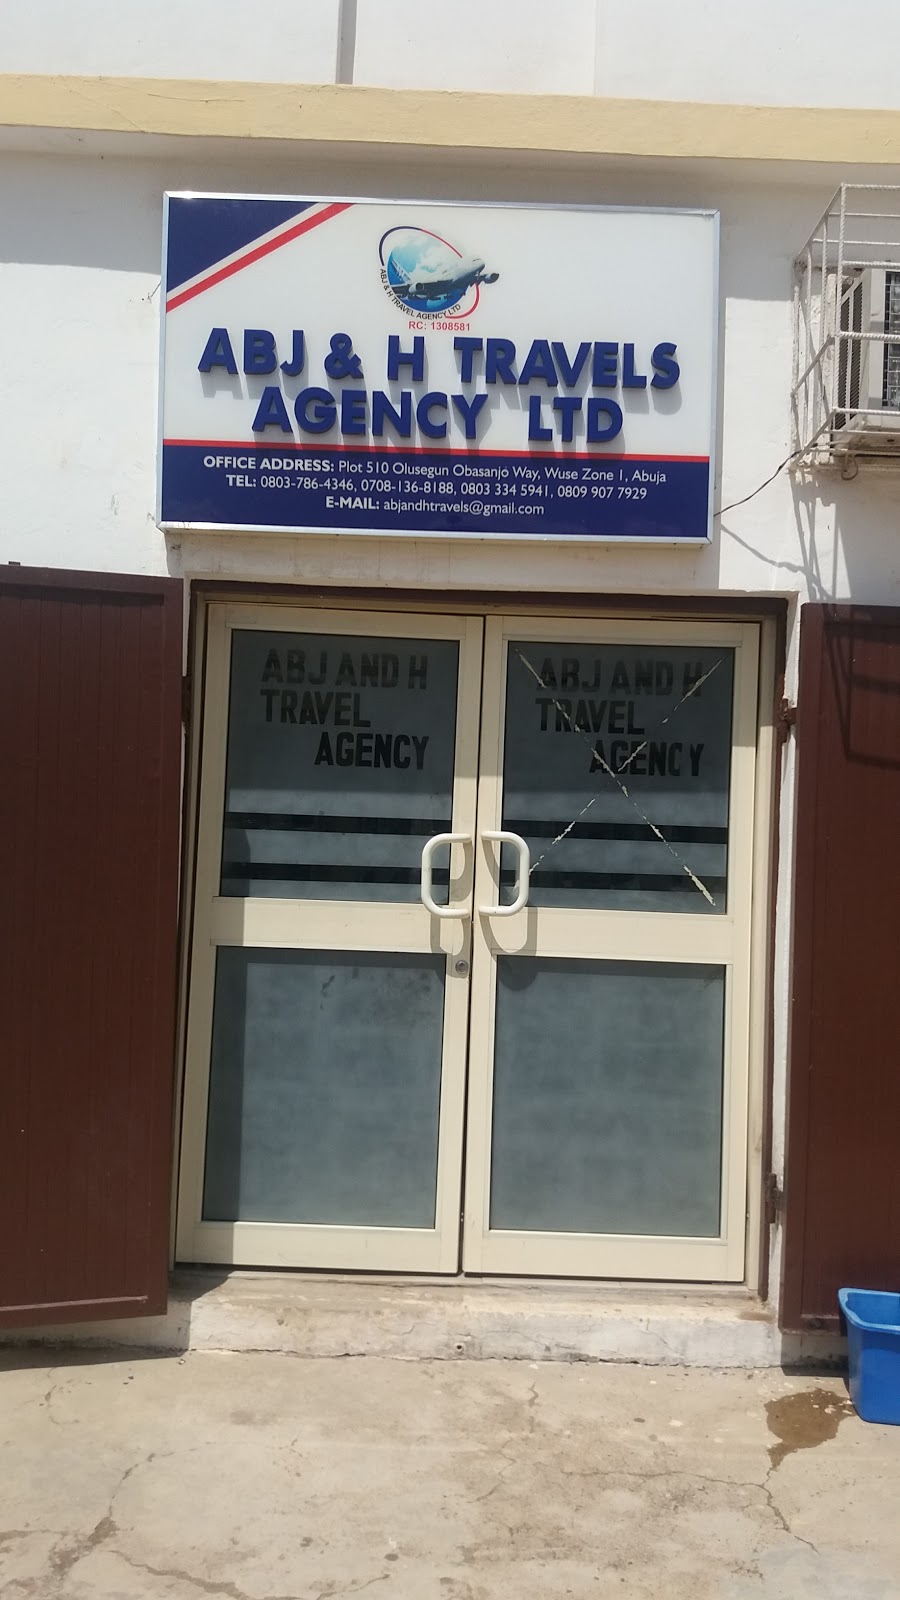 Abj & H Travels Agency Ltd